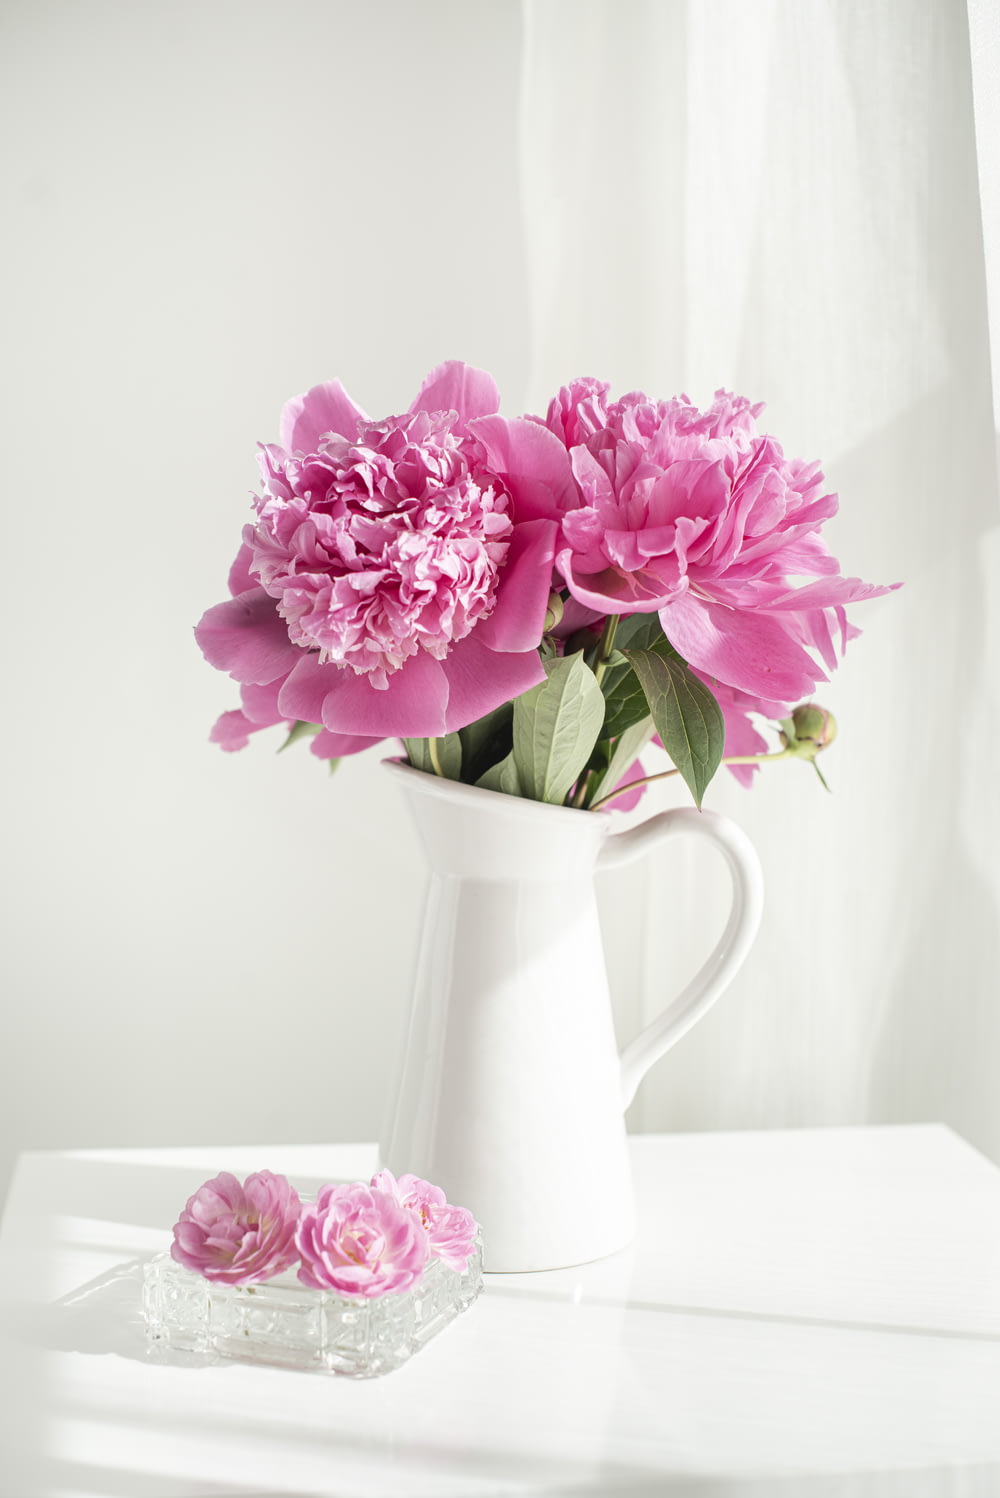 flores rosas y blancas en jarrón de cerámica blanca